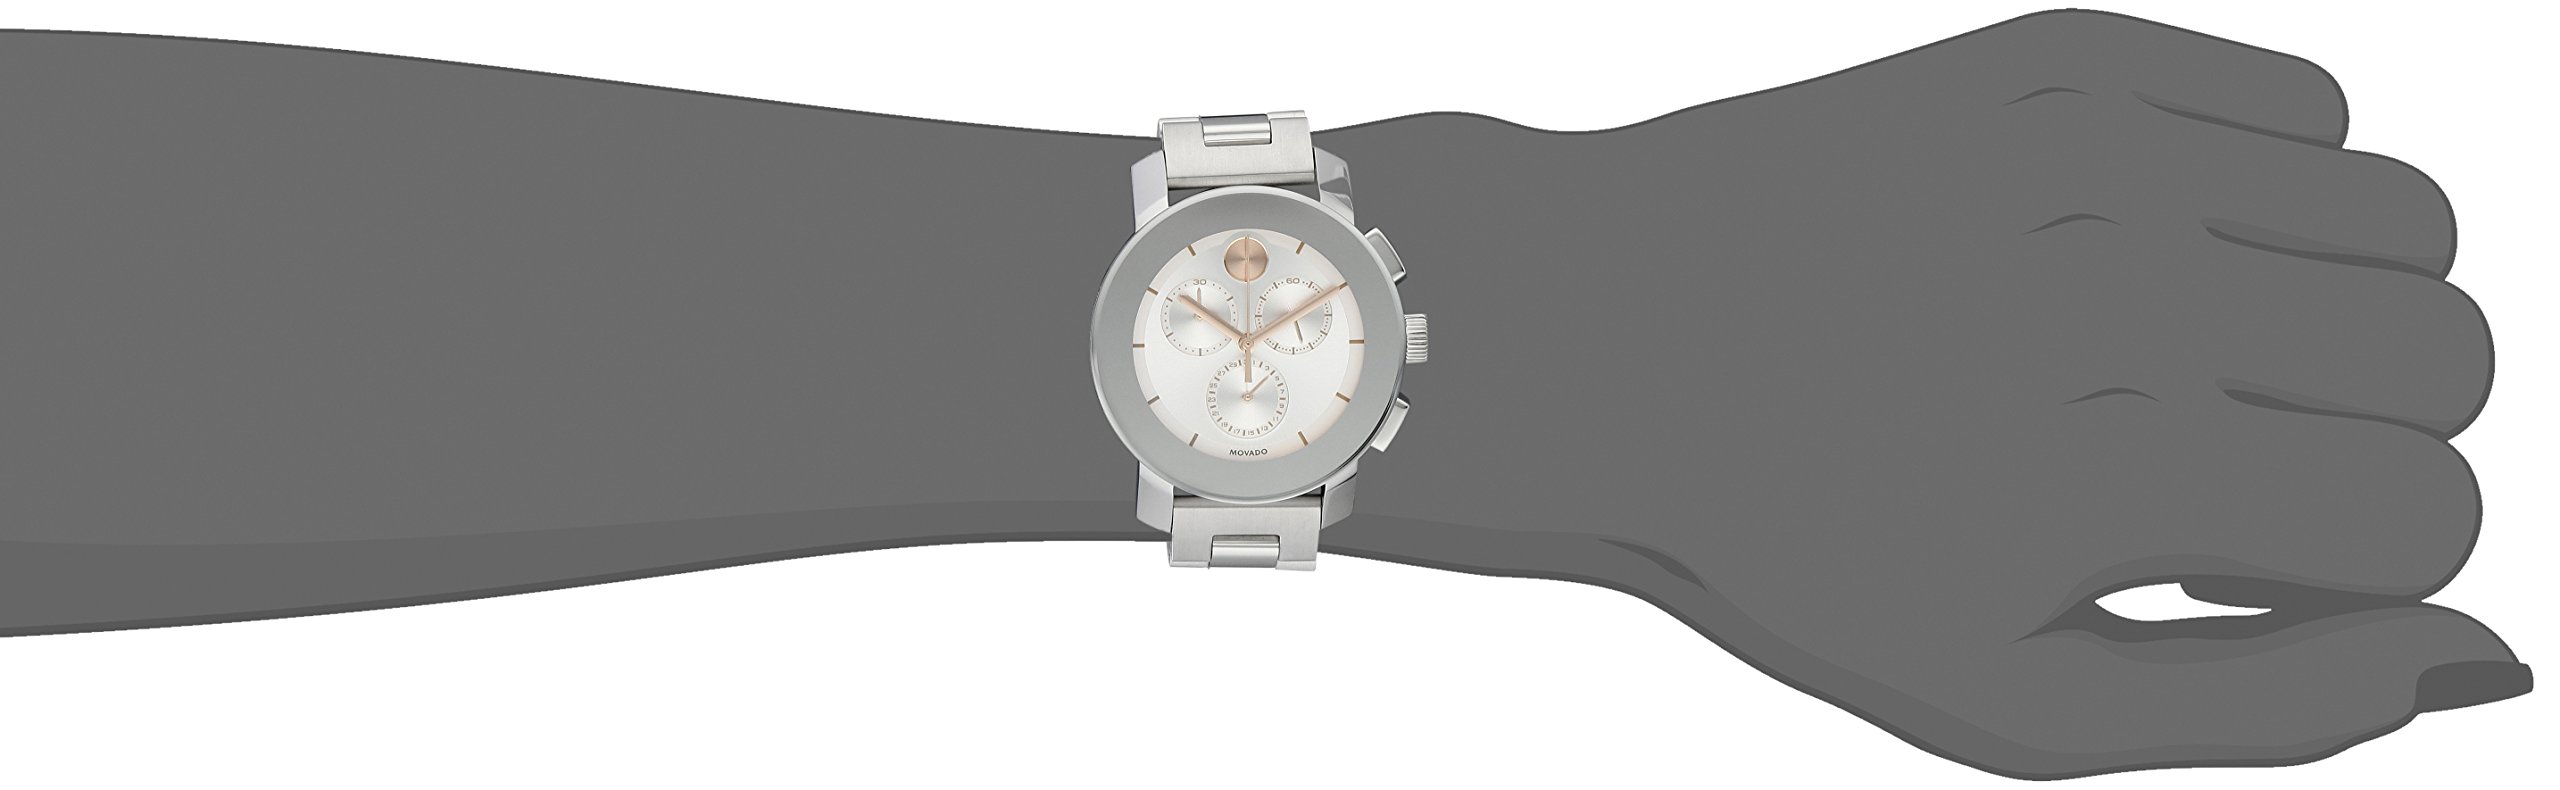 Movado Women's 3600356 Stainless Steel Bracelet Watch